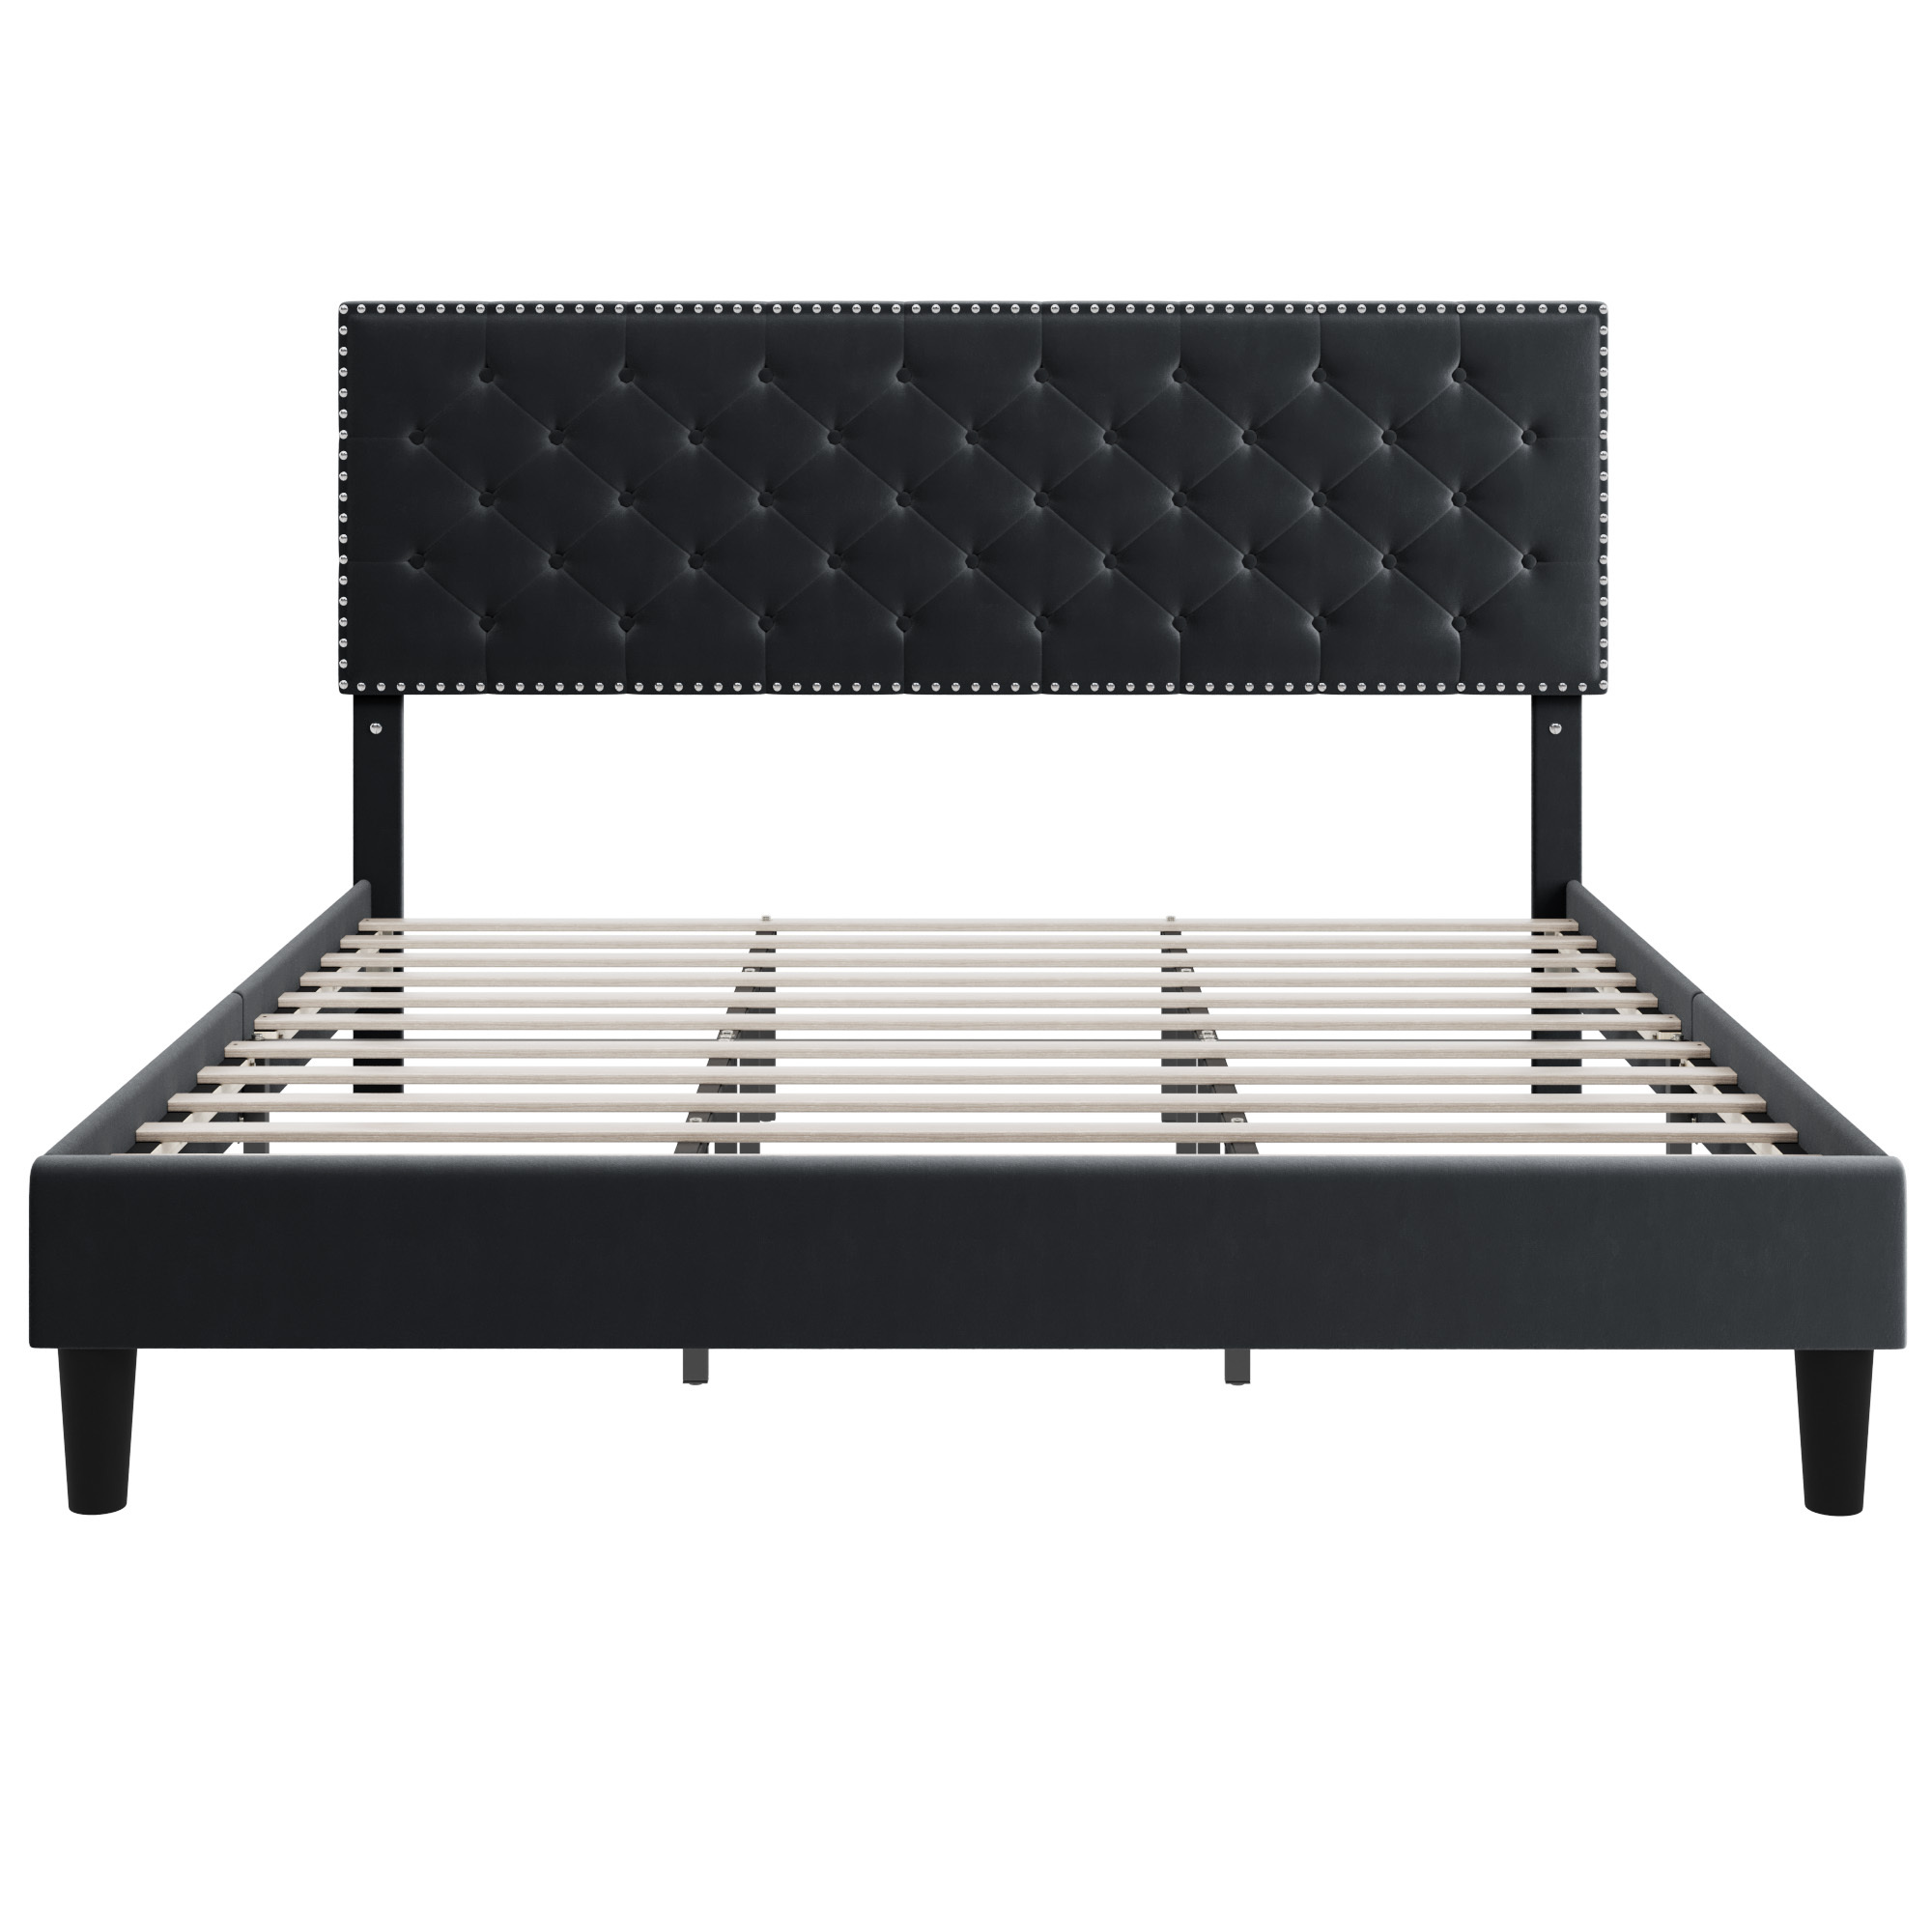 Homfa King Size Bed, Modern Upholstered Platform Bed Frame with Adjustable Headboard for Bedroom, Black - image 5 of 7